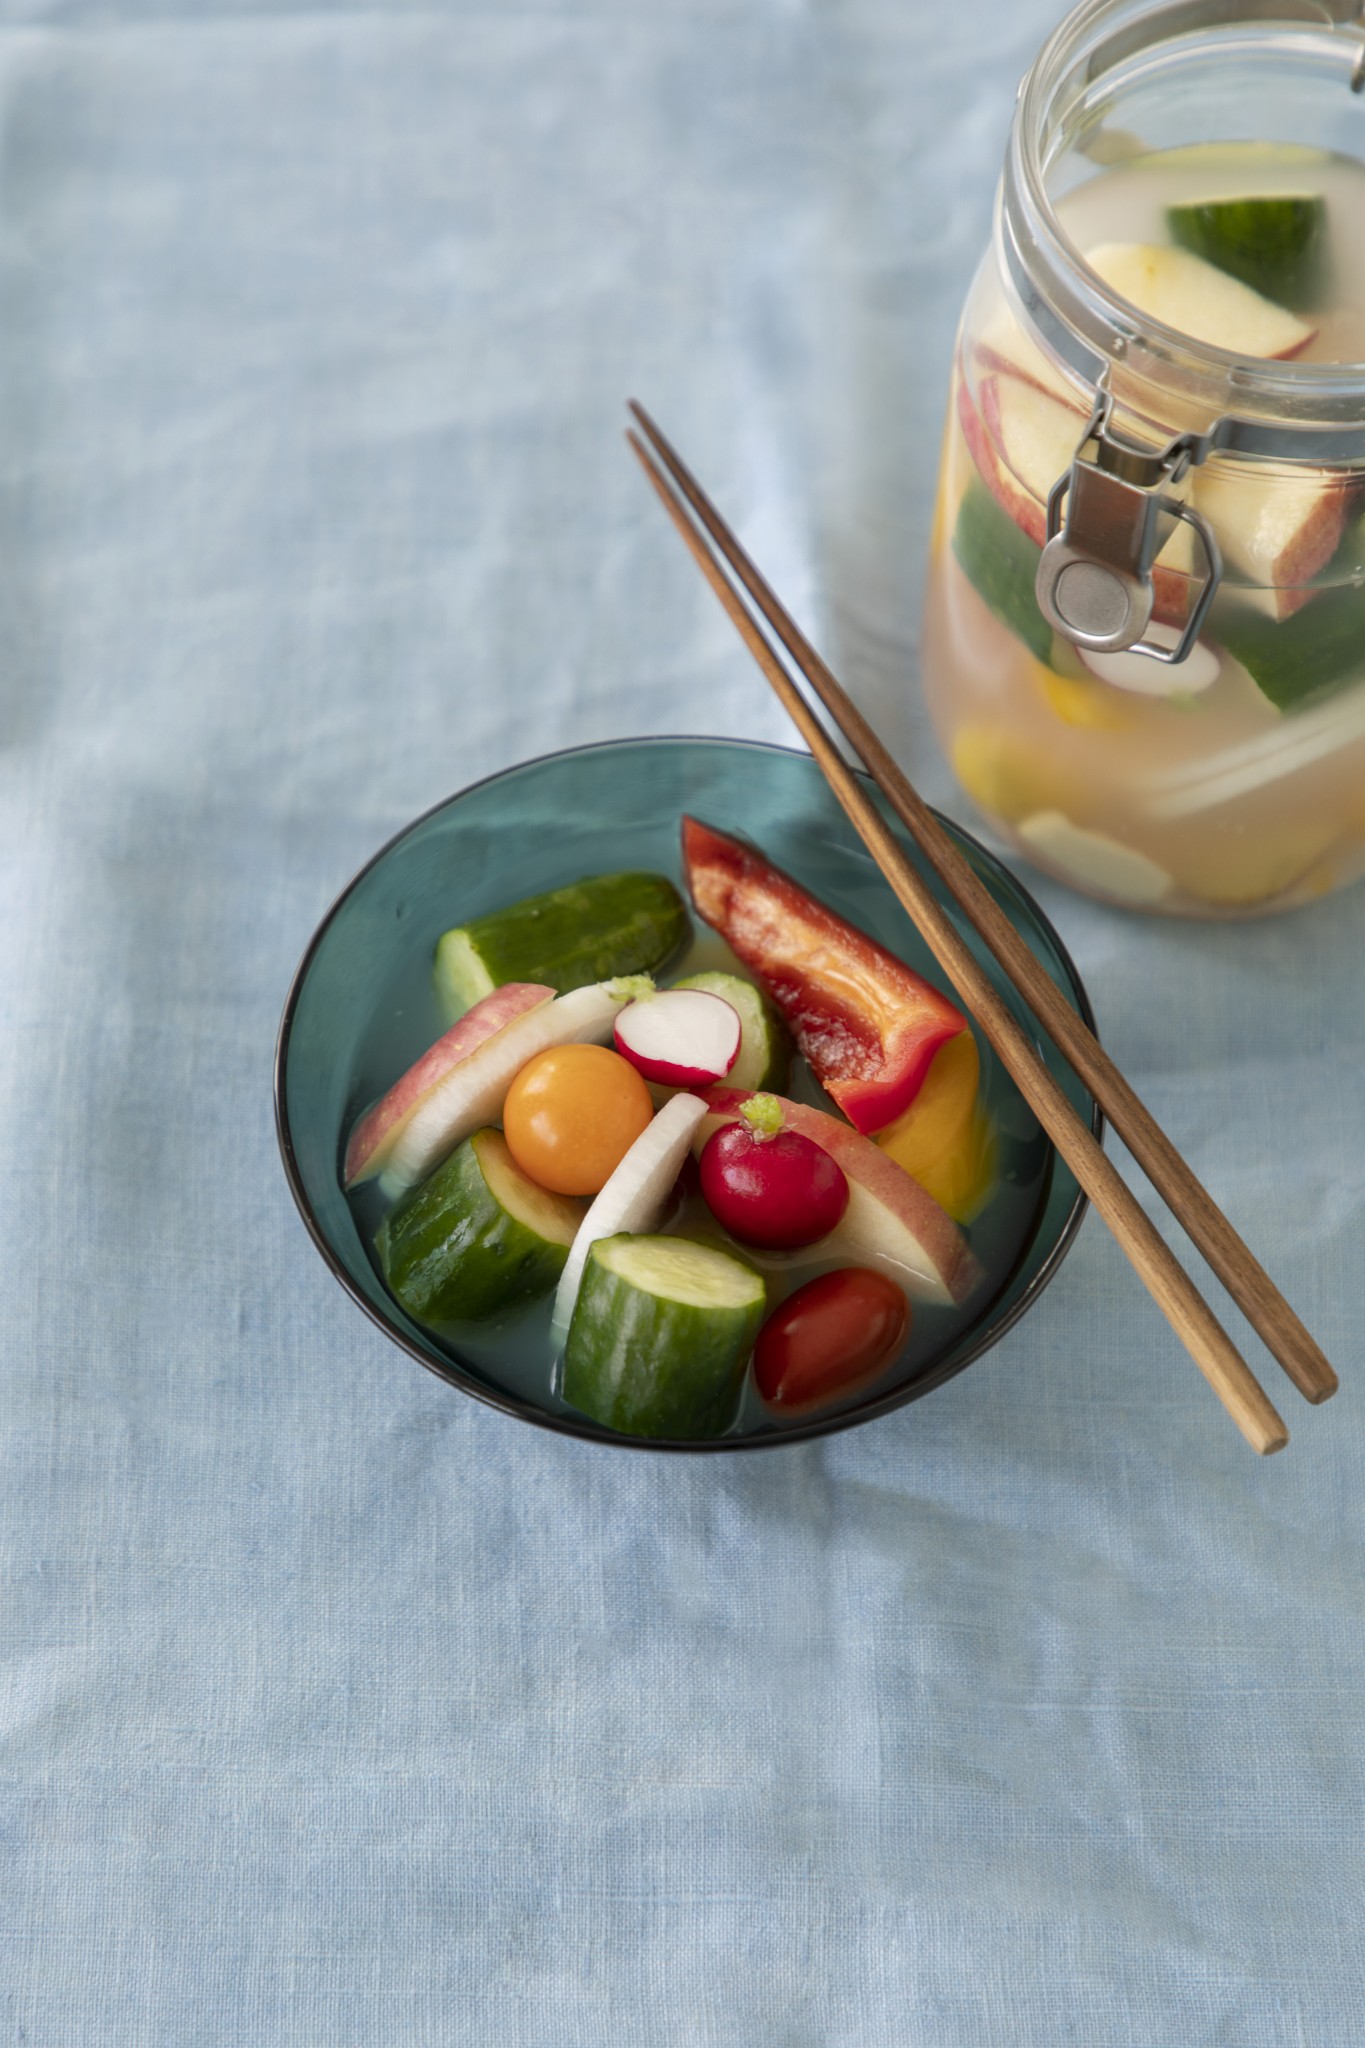 ダイエット中も強い味方 作り置きしておきたい 野菜の保存食 レシピ3選 Food Hanako Tokyo